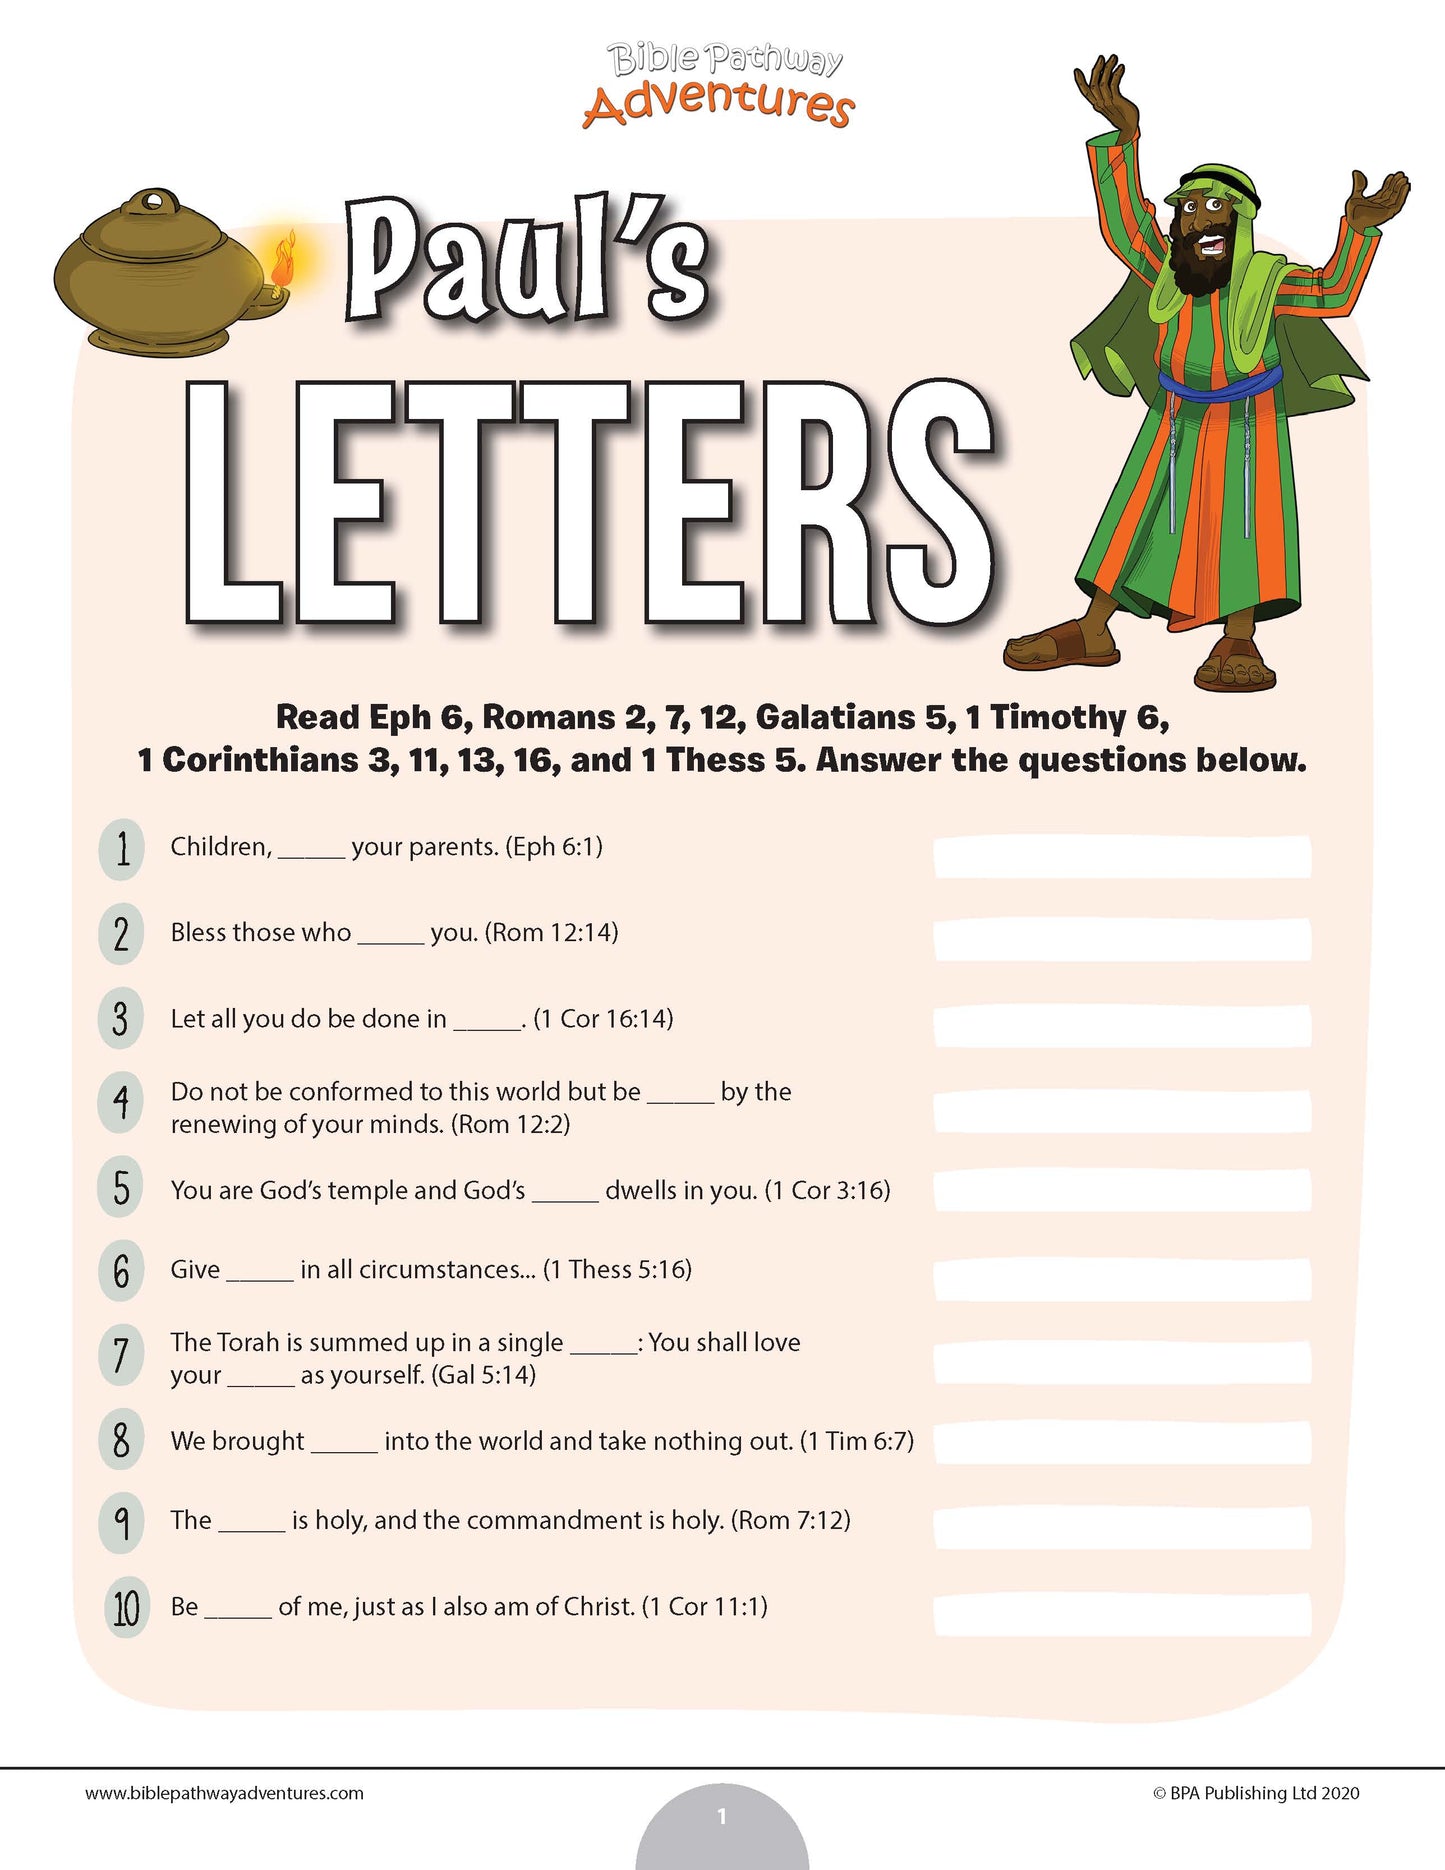 Cuestionario de las cartas de Pablo